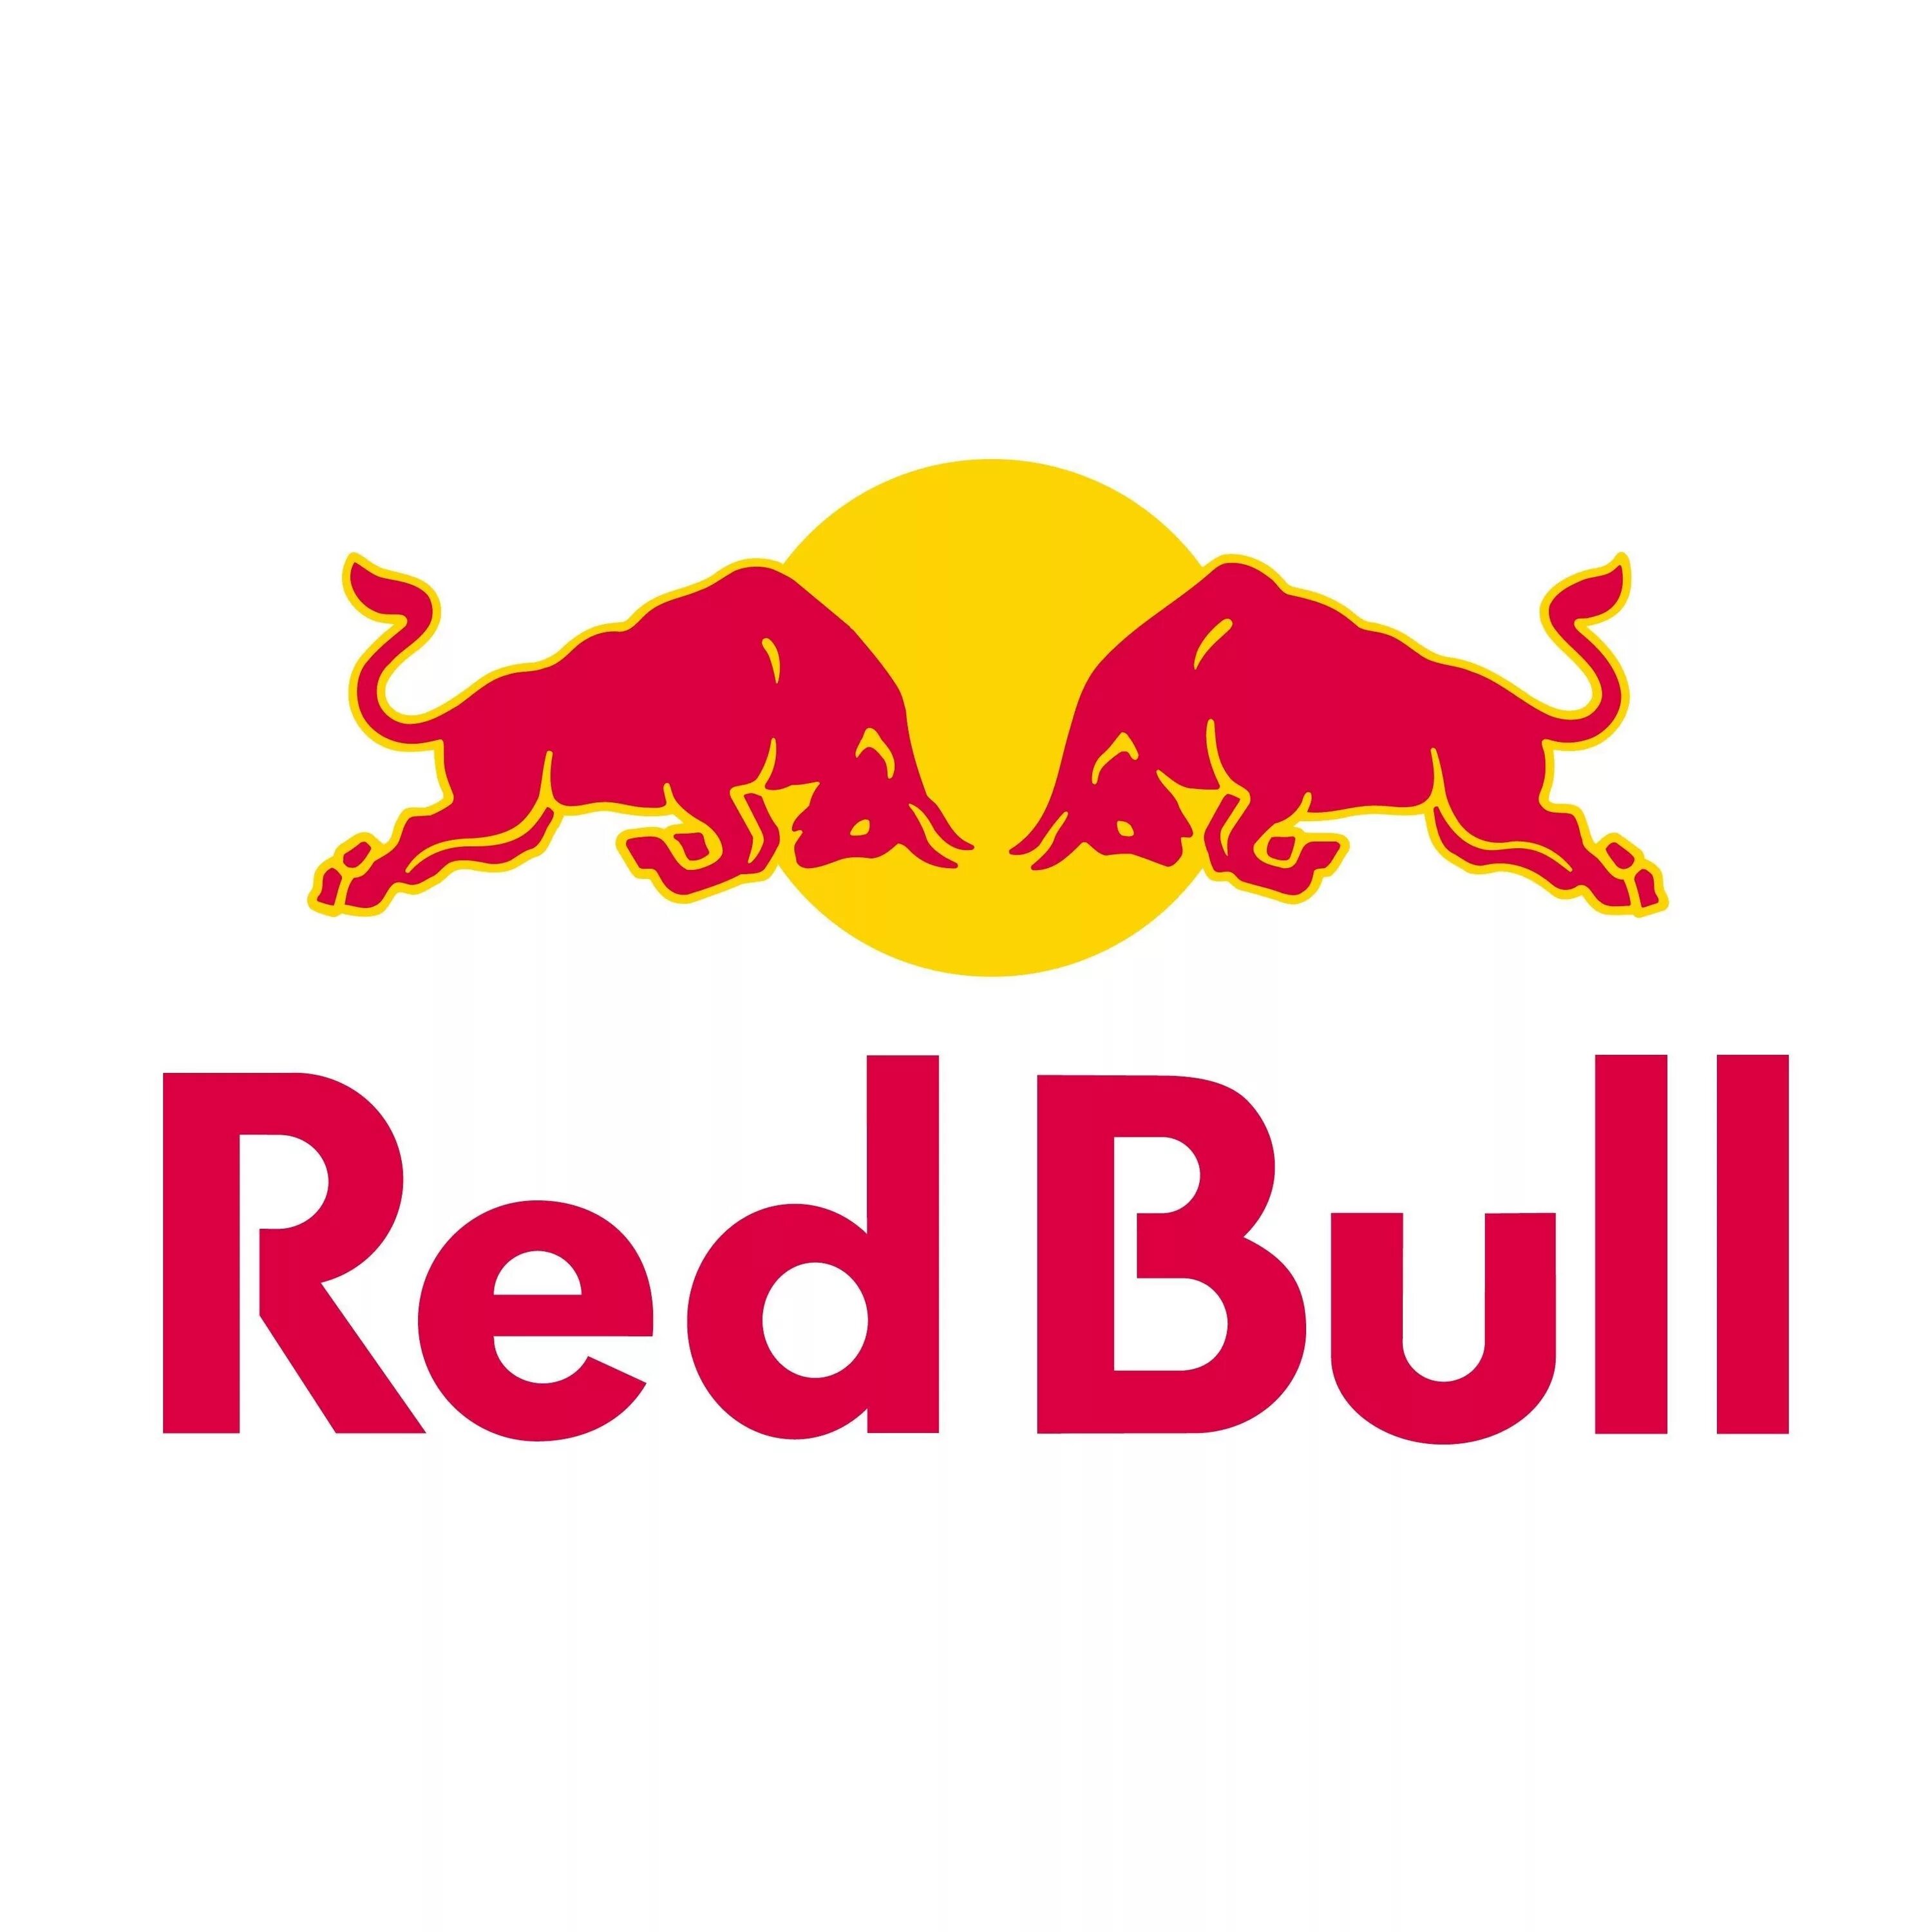 Ред буд. Ред Булл ф1 логотип. Red bull Racing f1 logo. Наклейка редбул на машину. Логотип ред Булла.